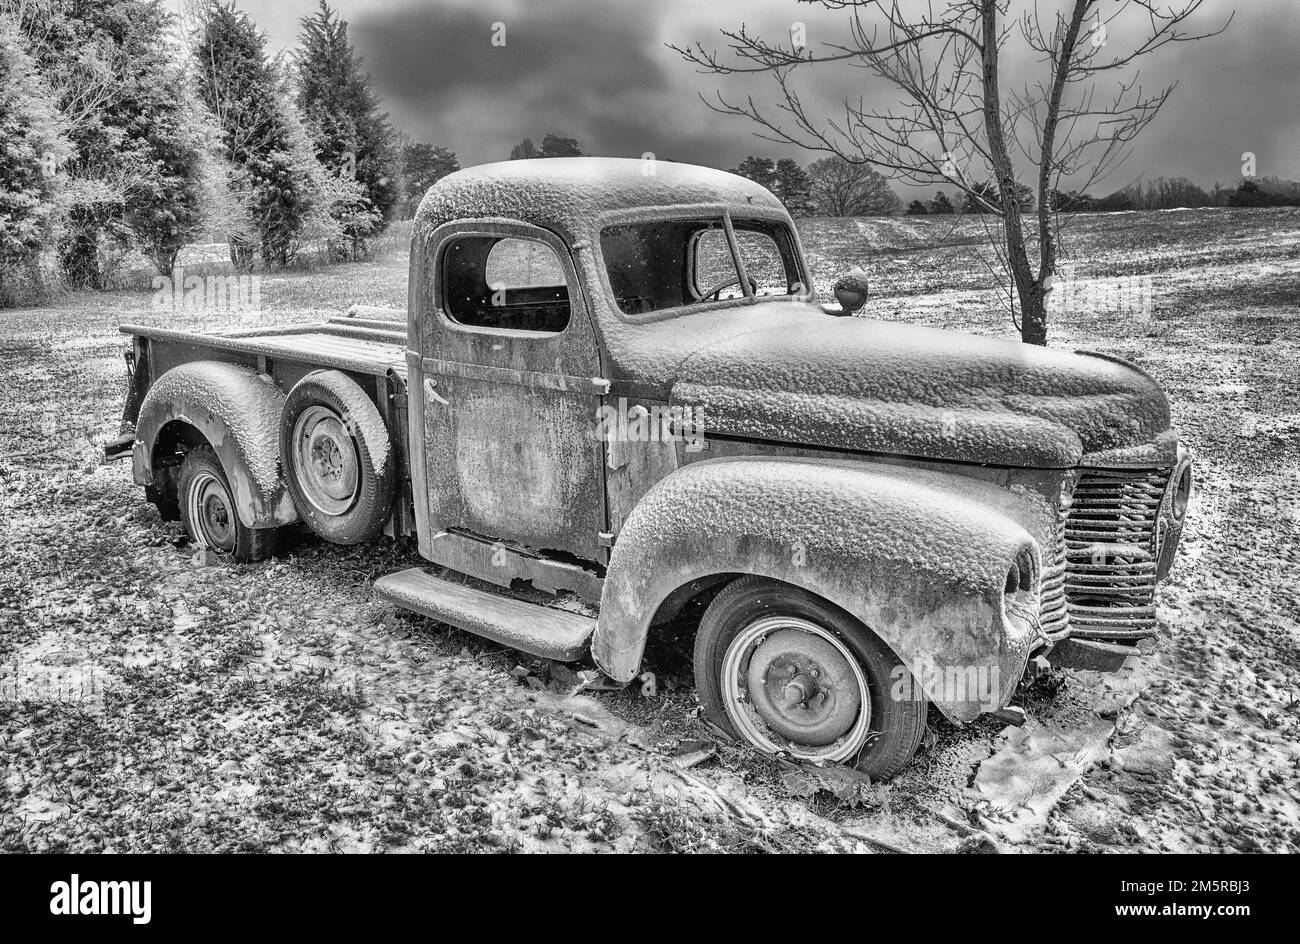 Une photo en noir et blanc d'un ancien pick-up IH de l'époque 1940s abandonné dans un champ enneigé. Banque D'Images